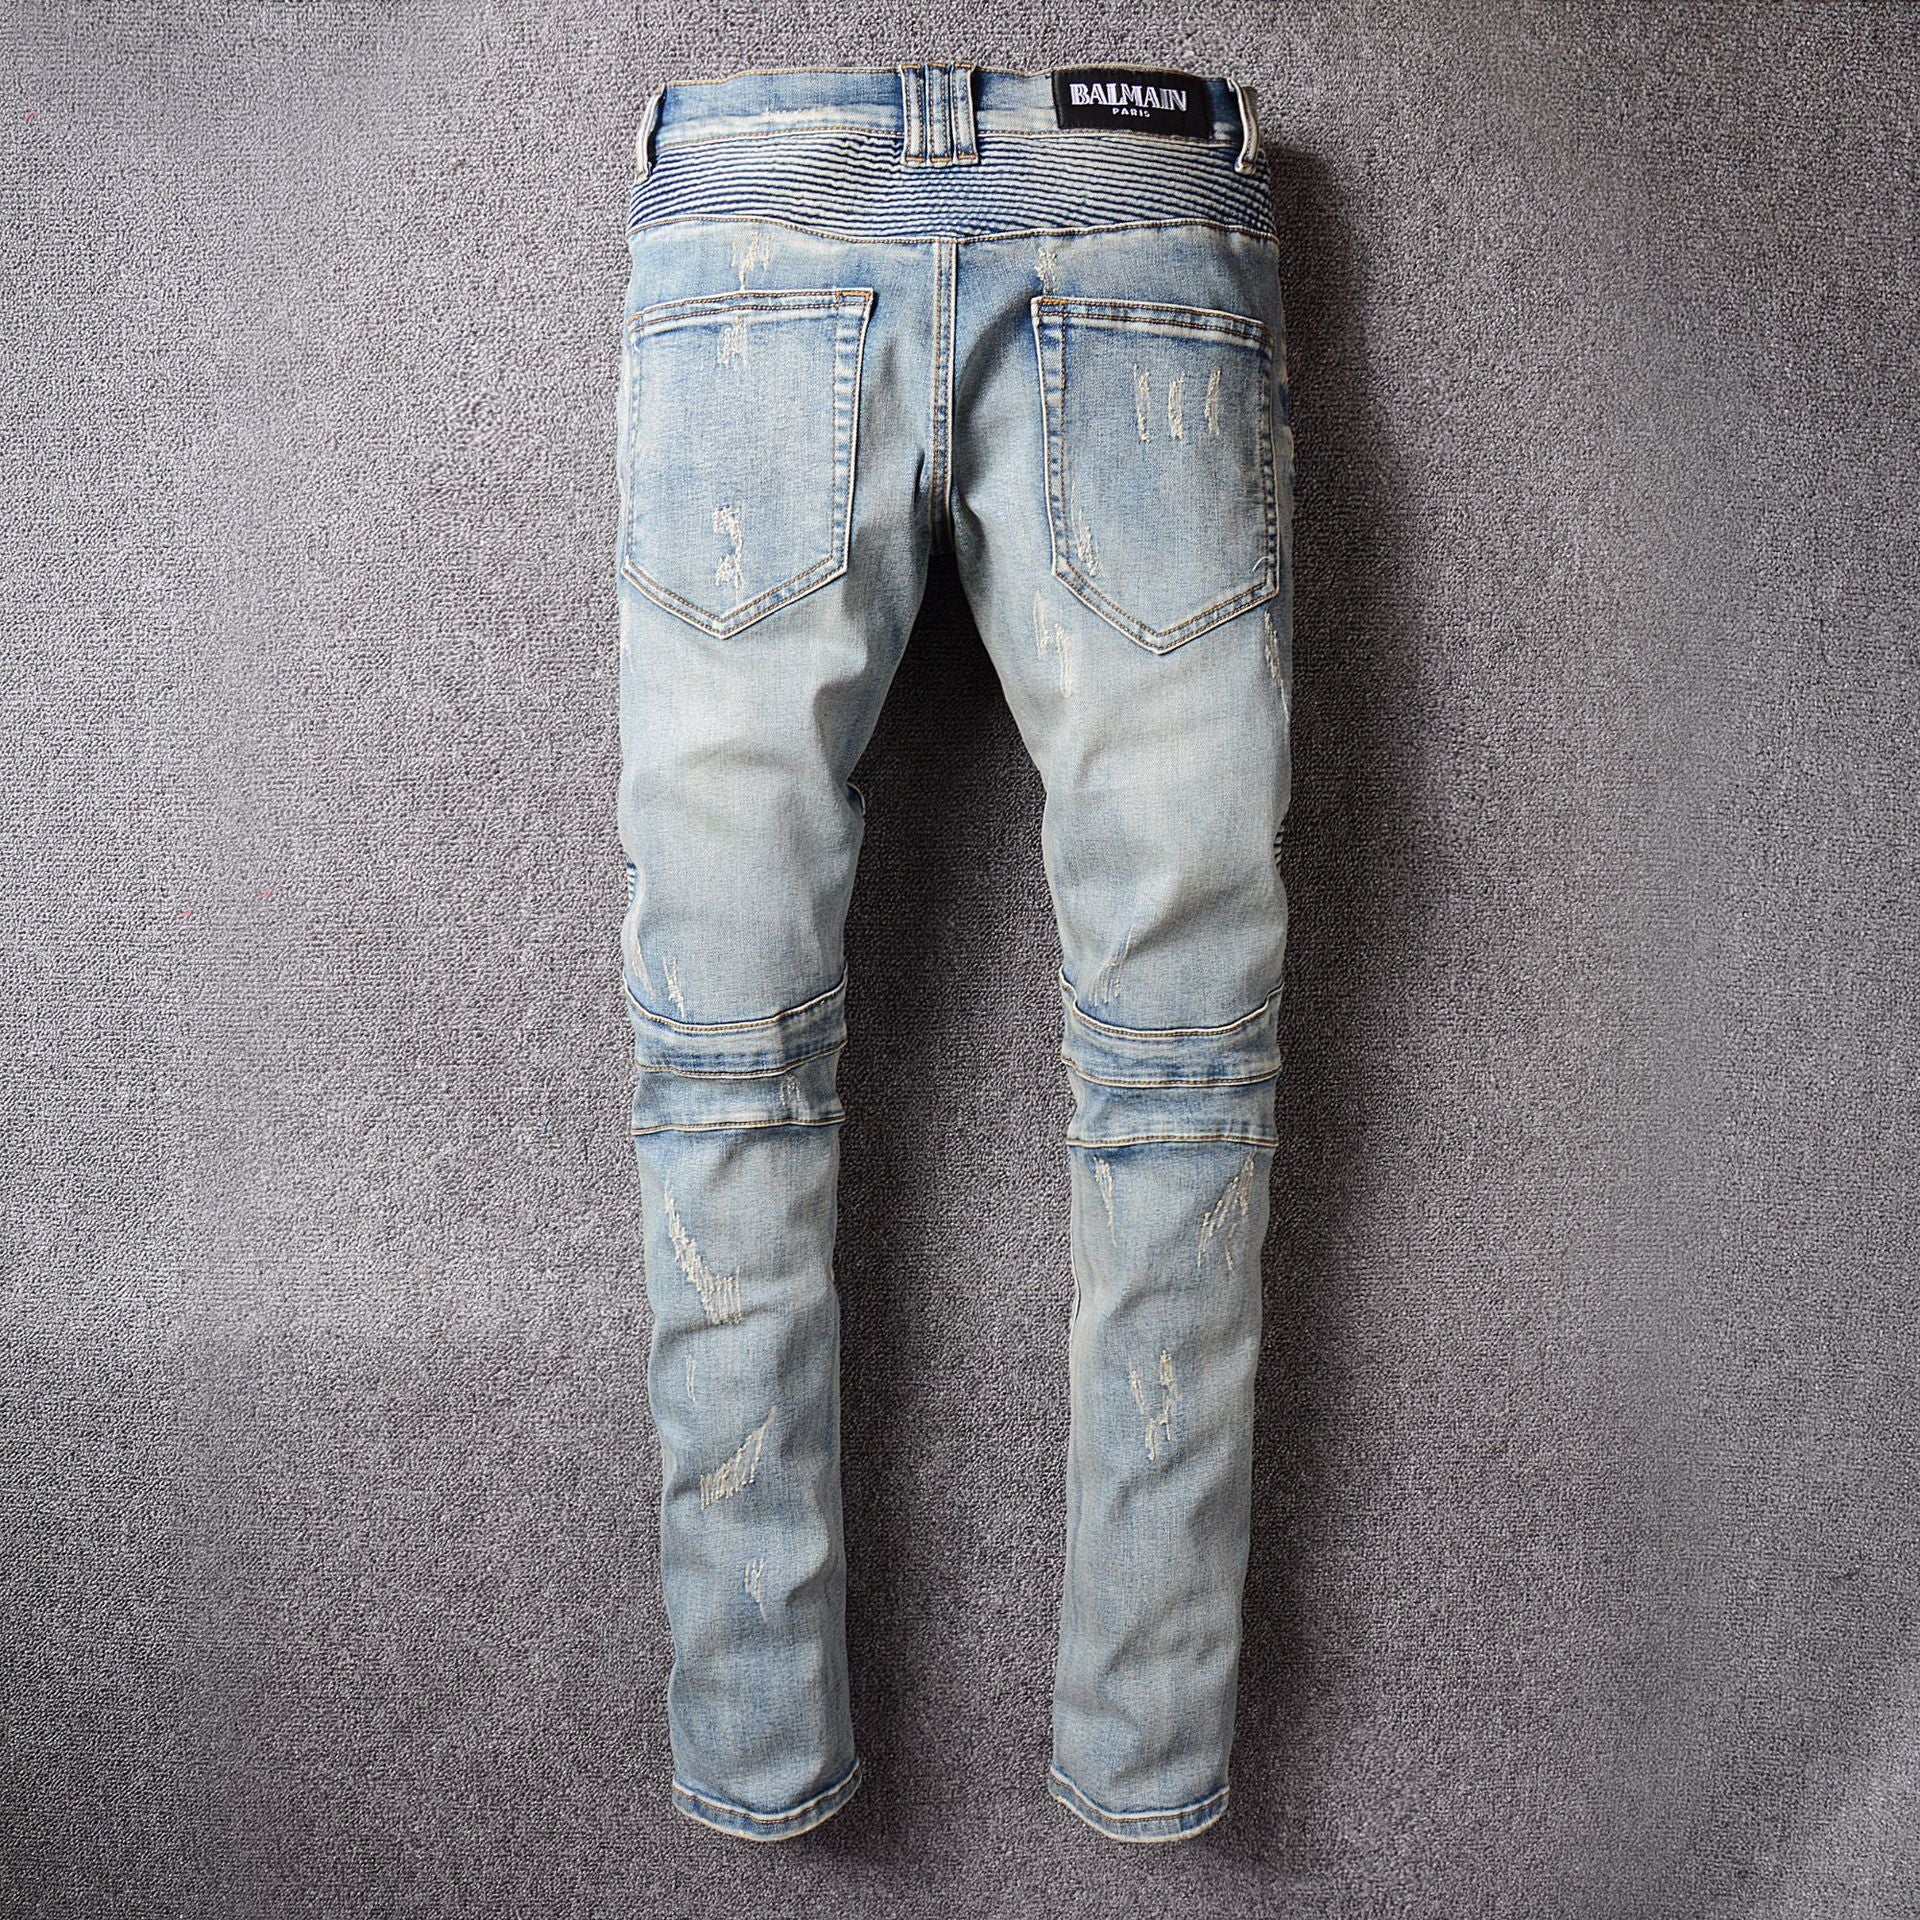 Europen france brand Men's denim trousers jeans pants Slim Straight ...